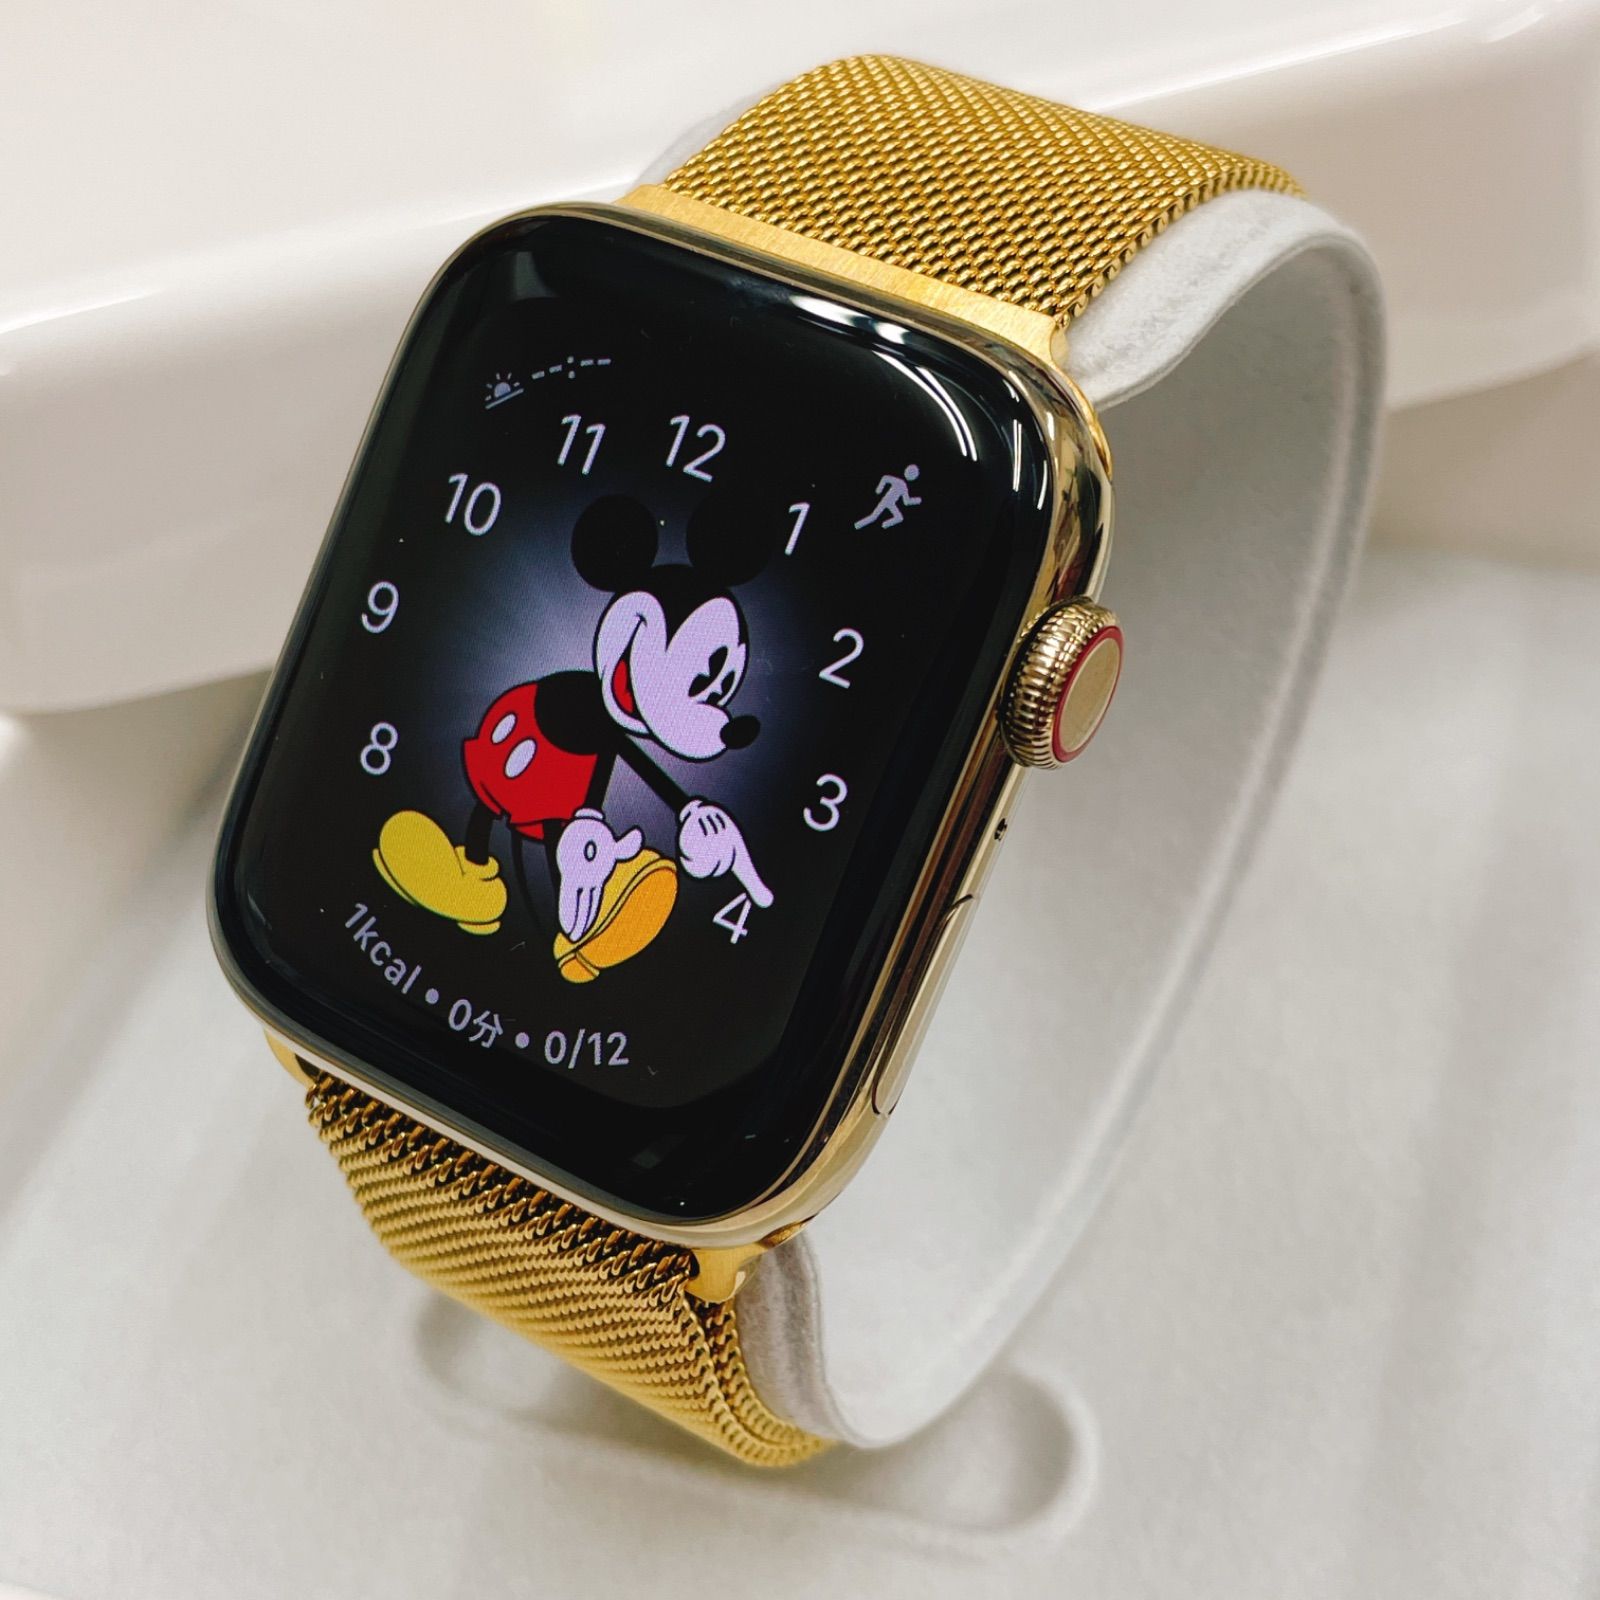 Apple Watch シリーズ6 goldステンレス アップルウォッチ 44